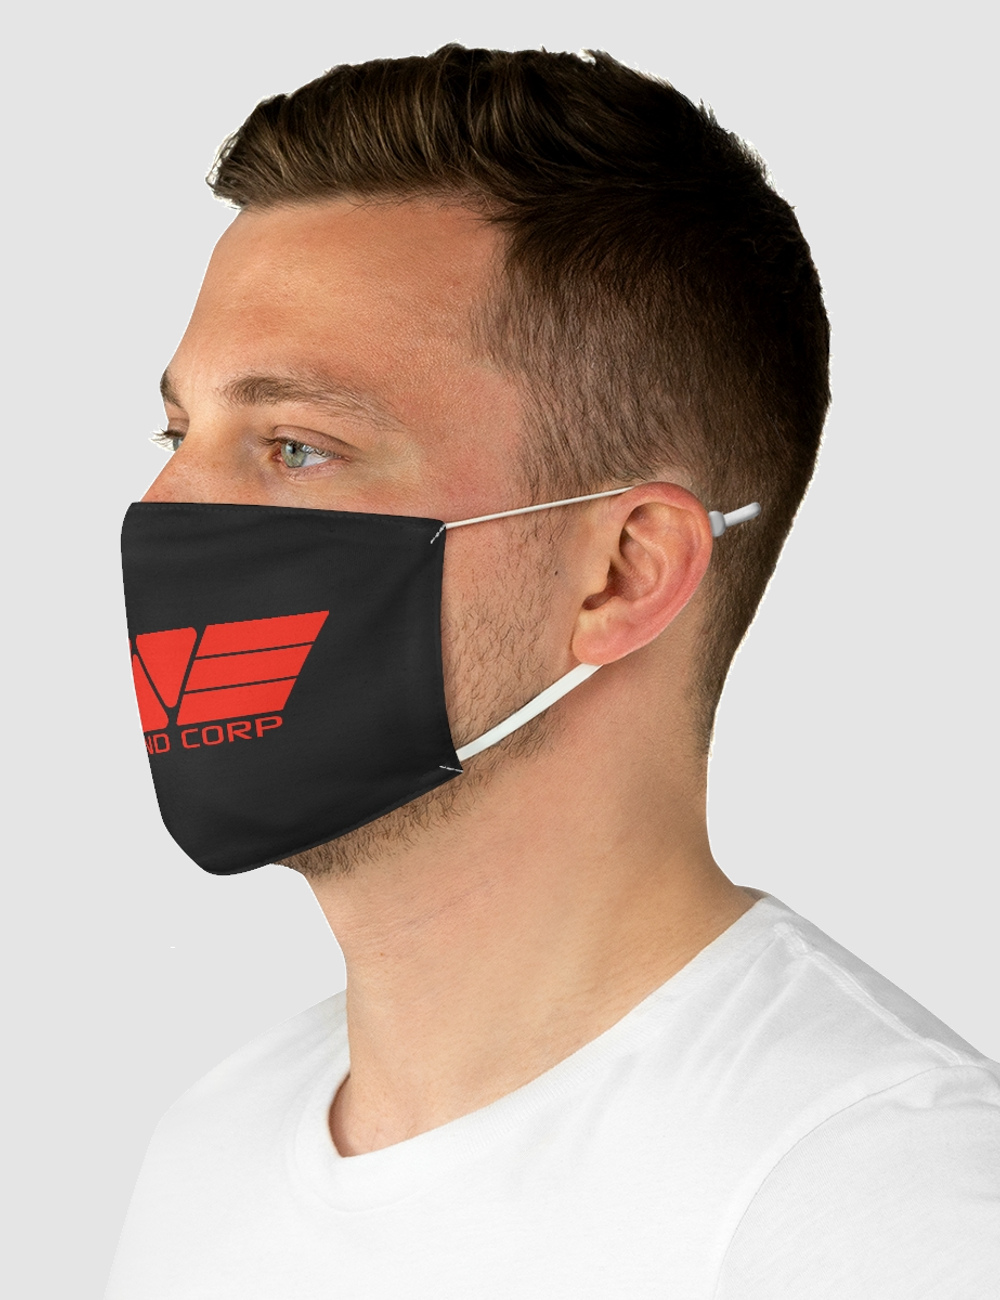 Weyland Corporation | Fabric Face Mask OniTakai